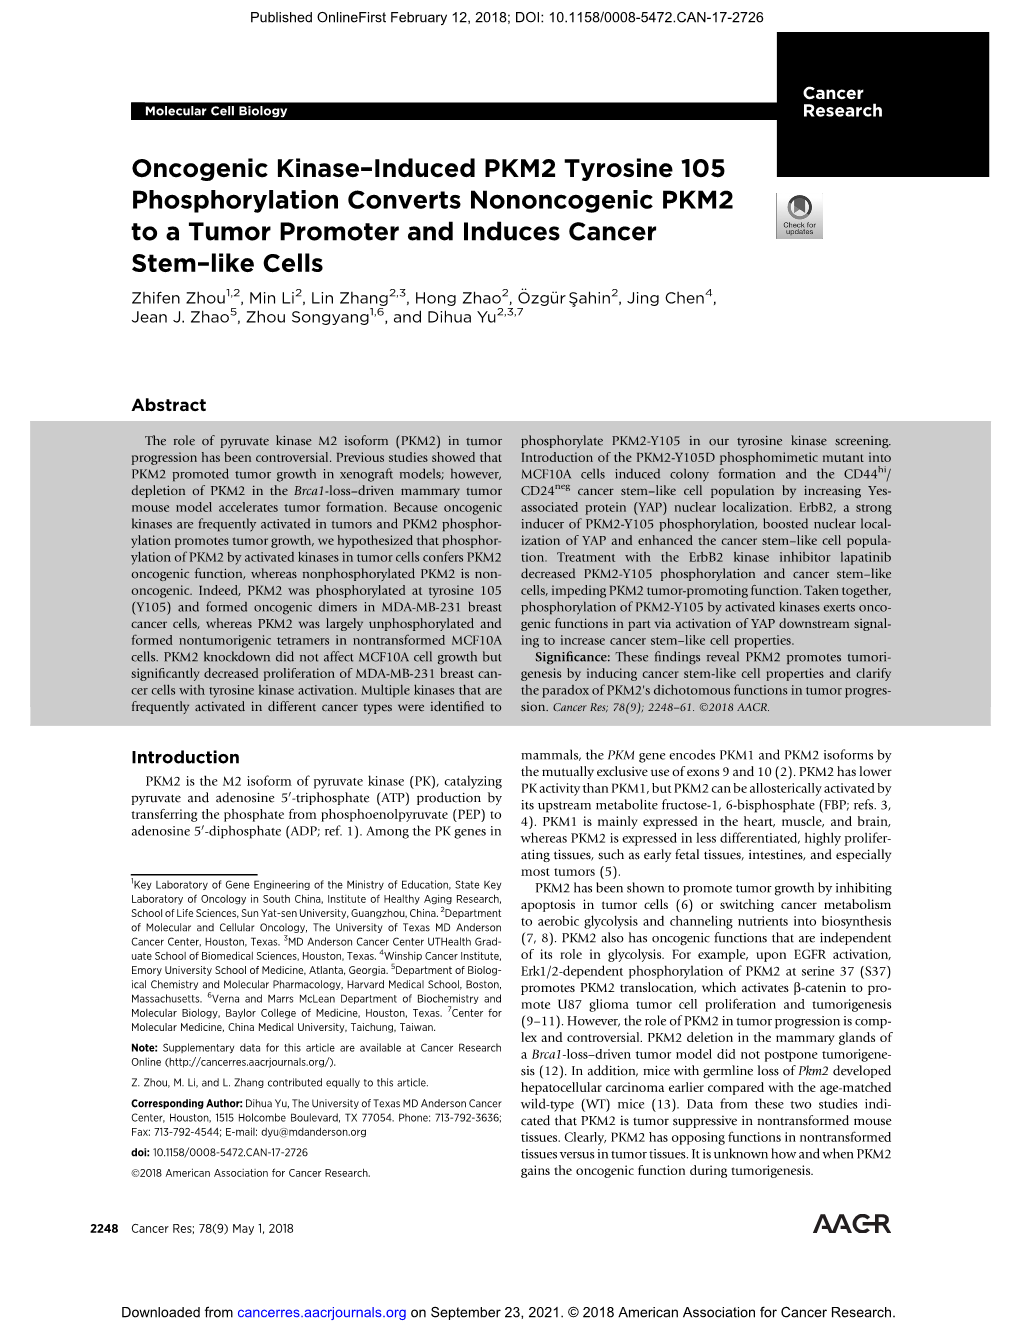 Oncogenic Kinase–Induced PKM2 Tyrosine 105 Phosphorylation